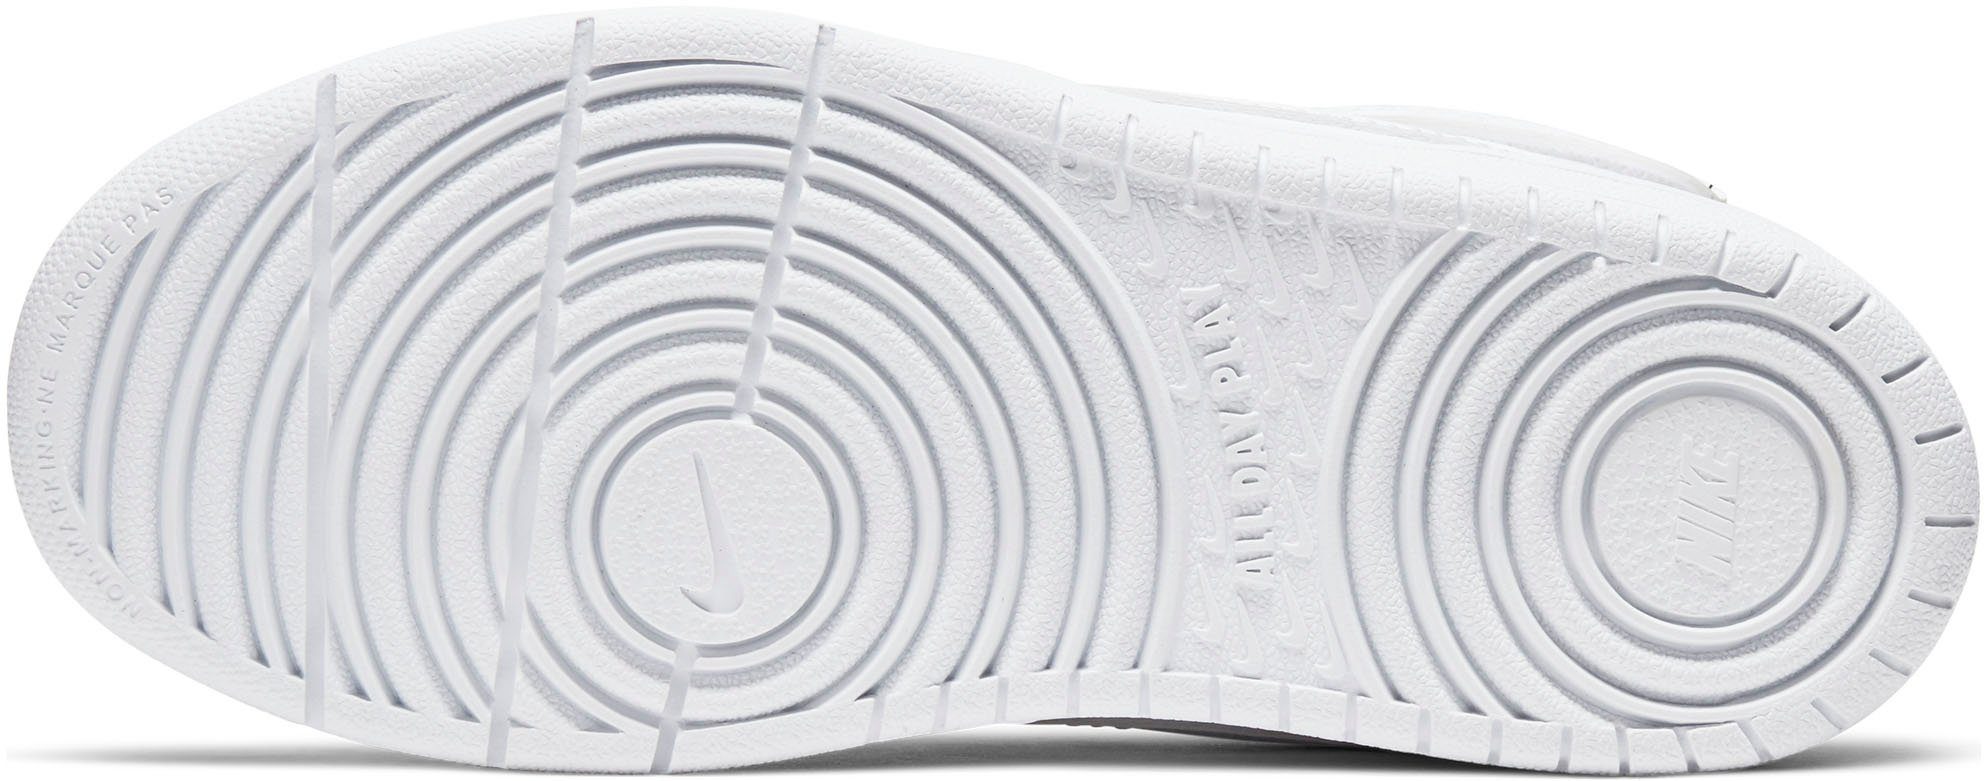 Spuren Sportswear COURT Design Air des auf BOROUGH MID den 2 Force Sneaker Nike 1